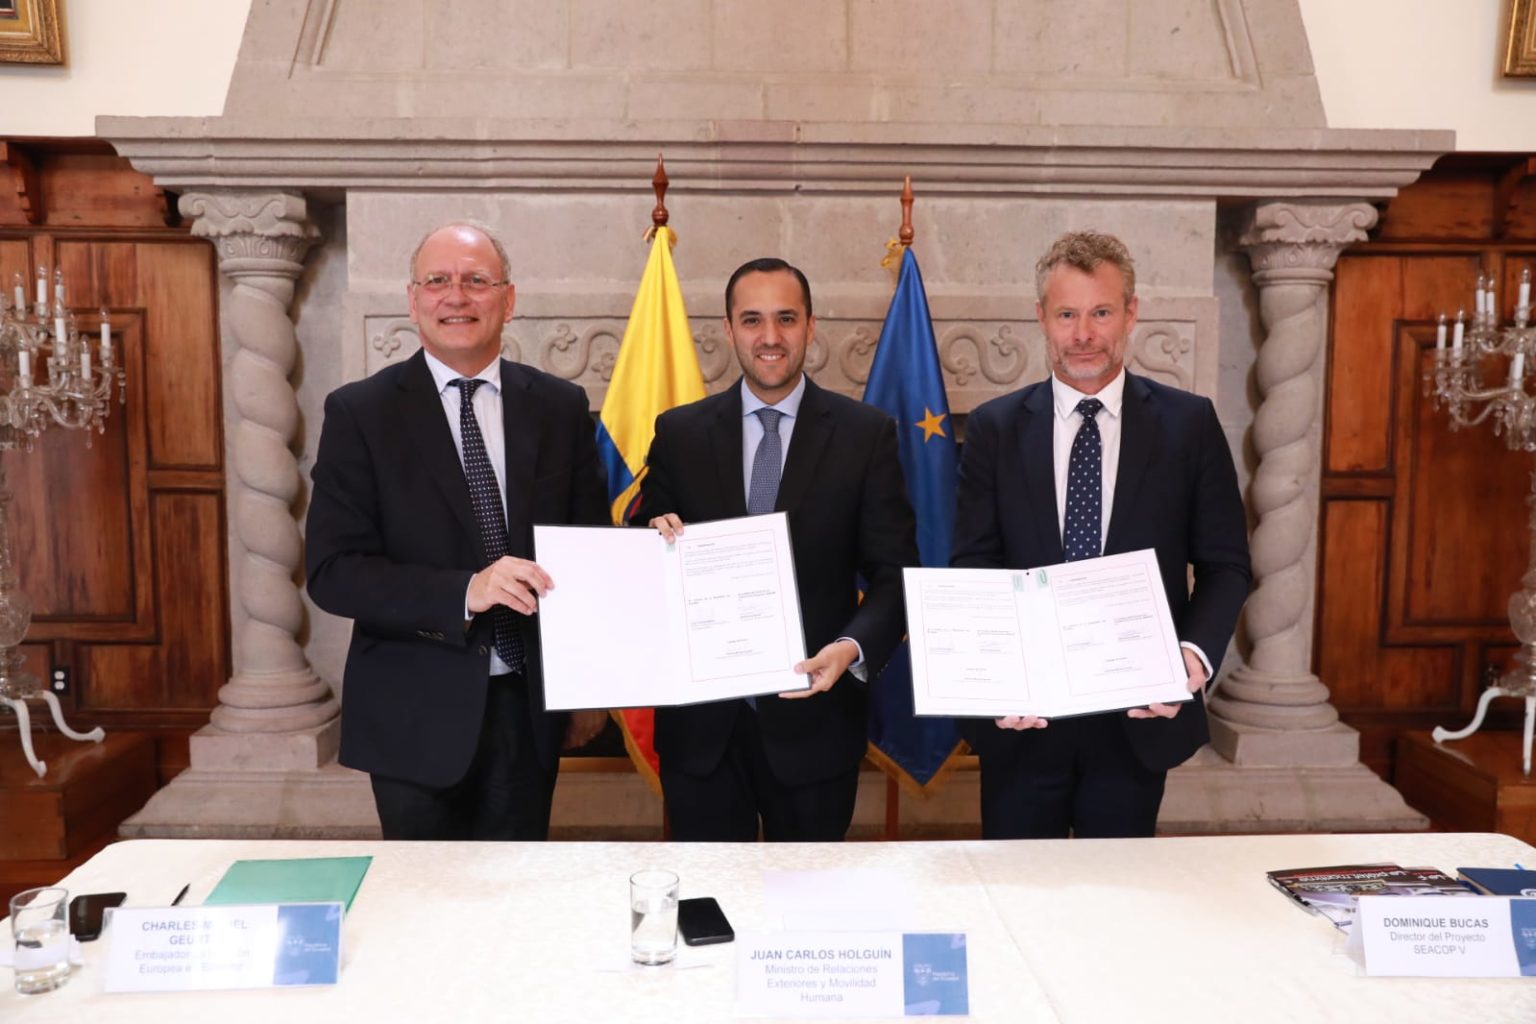 Cancillería de Ecuador y la Unión Europea suscribieron un memorando de entendimiento en materia de lucha contra el tráfico marítimo ilícito. Foto: Cancillería de Ecuador.